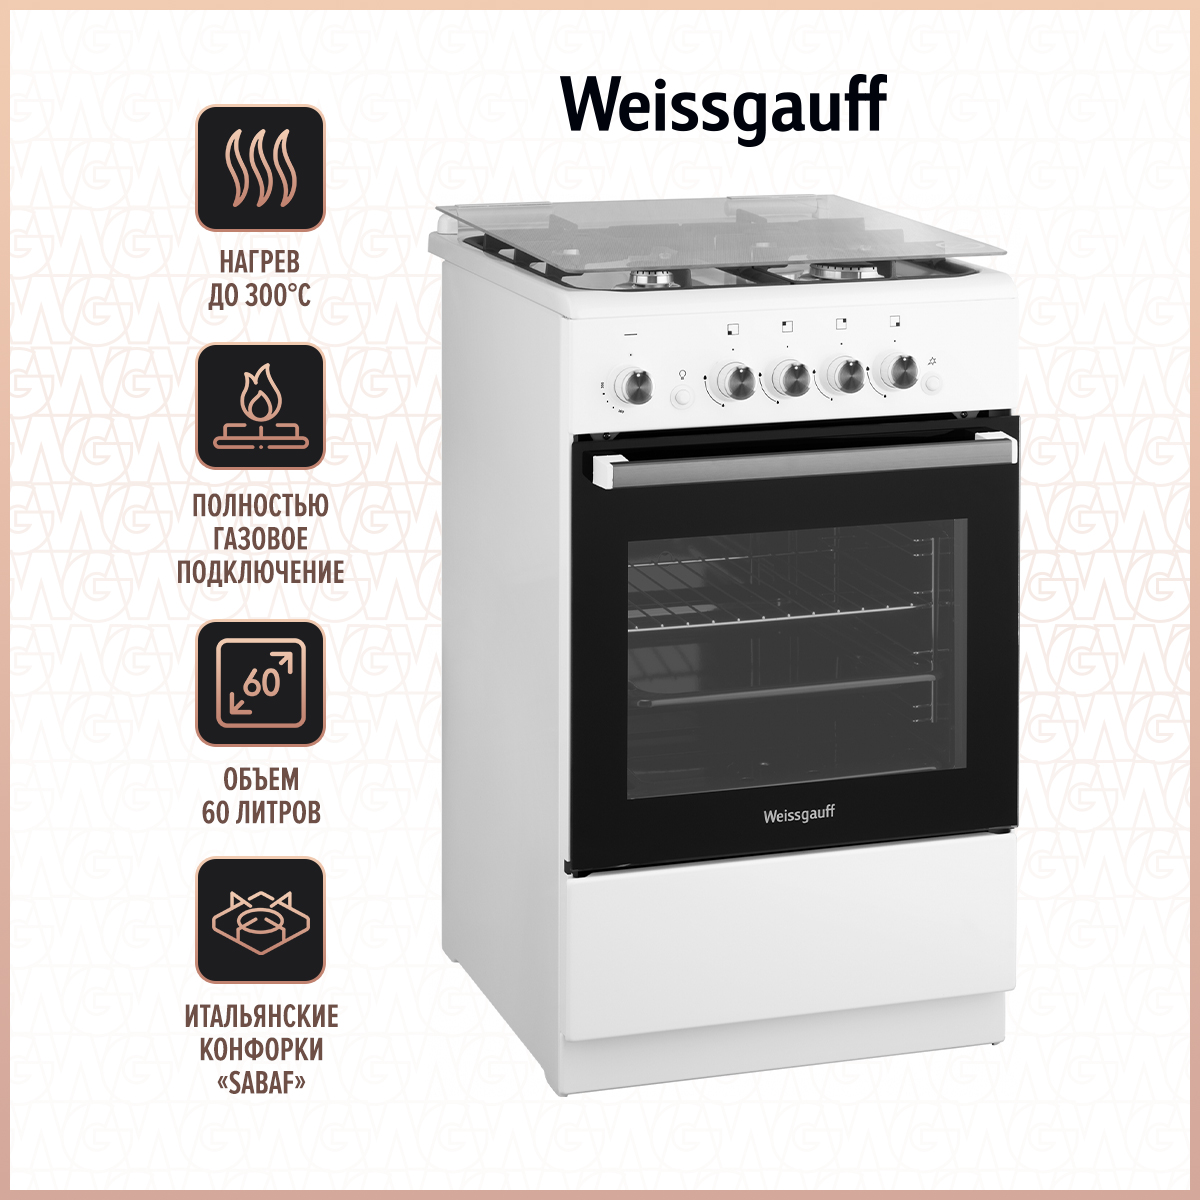 Газовая плита Weissgauff WGS G4G12 WGS White, купить в Москве, цены в интернет-магазинах на Мегамаркет